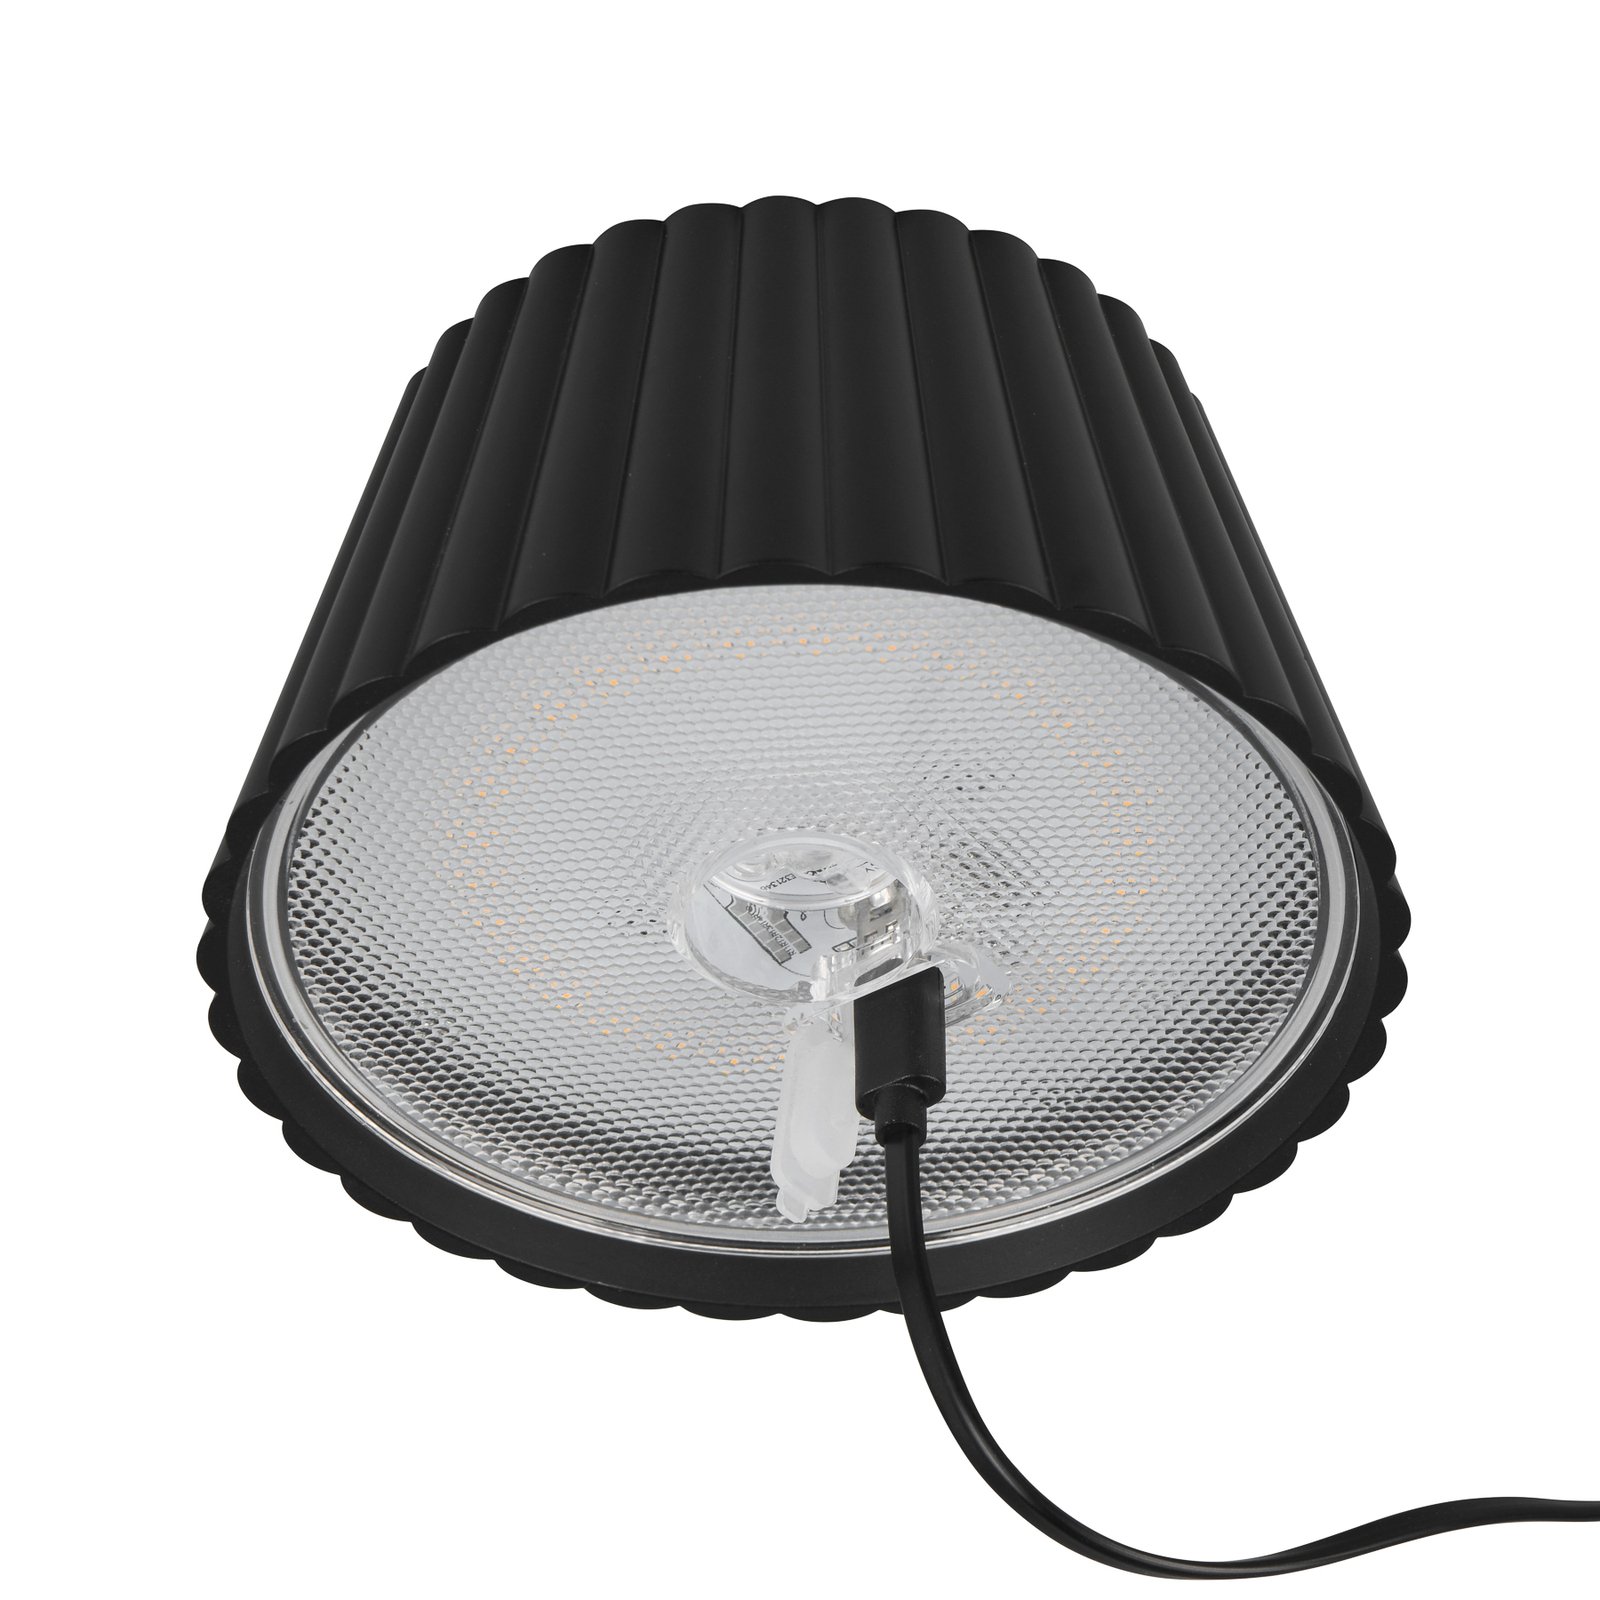 Suarez LED table lamp, black, height 39 cm, metal